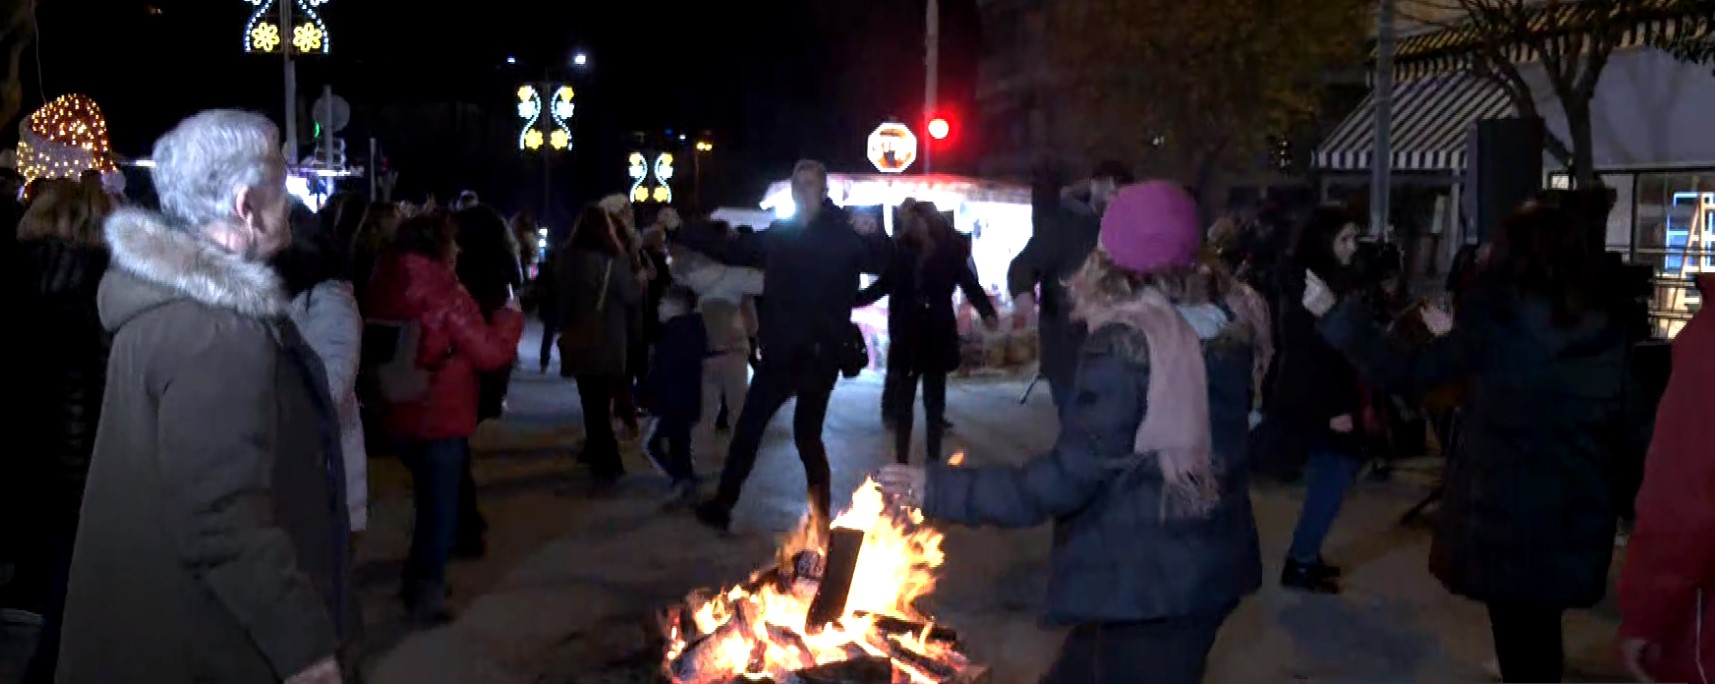 Θεσσαλονίκη: Άναψαν φωτιές στο Επταπύργιο- Αναβιώνει το έθιμο με τις «Κλαδαριές»